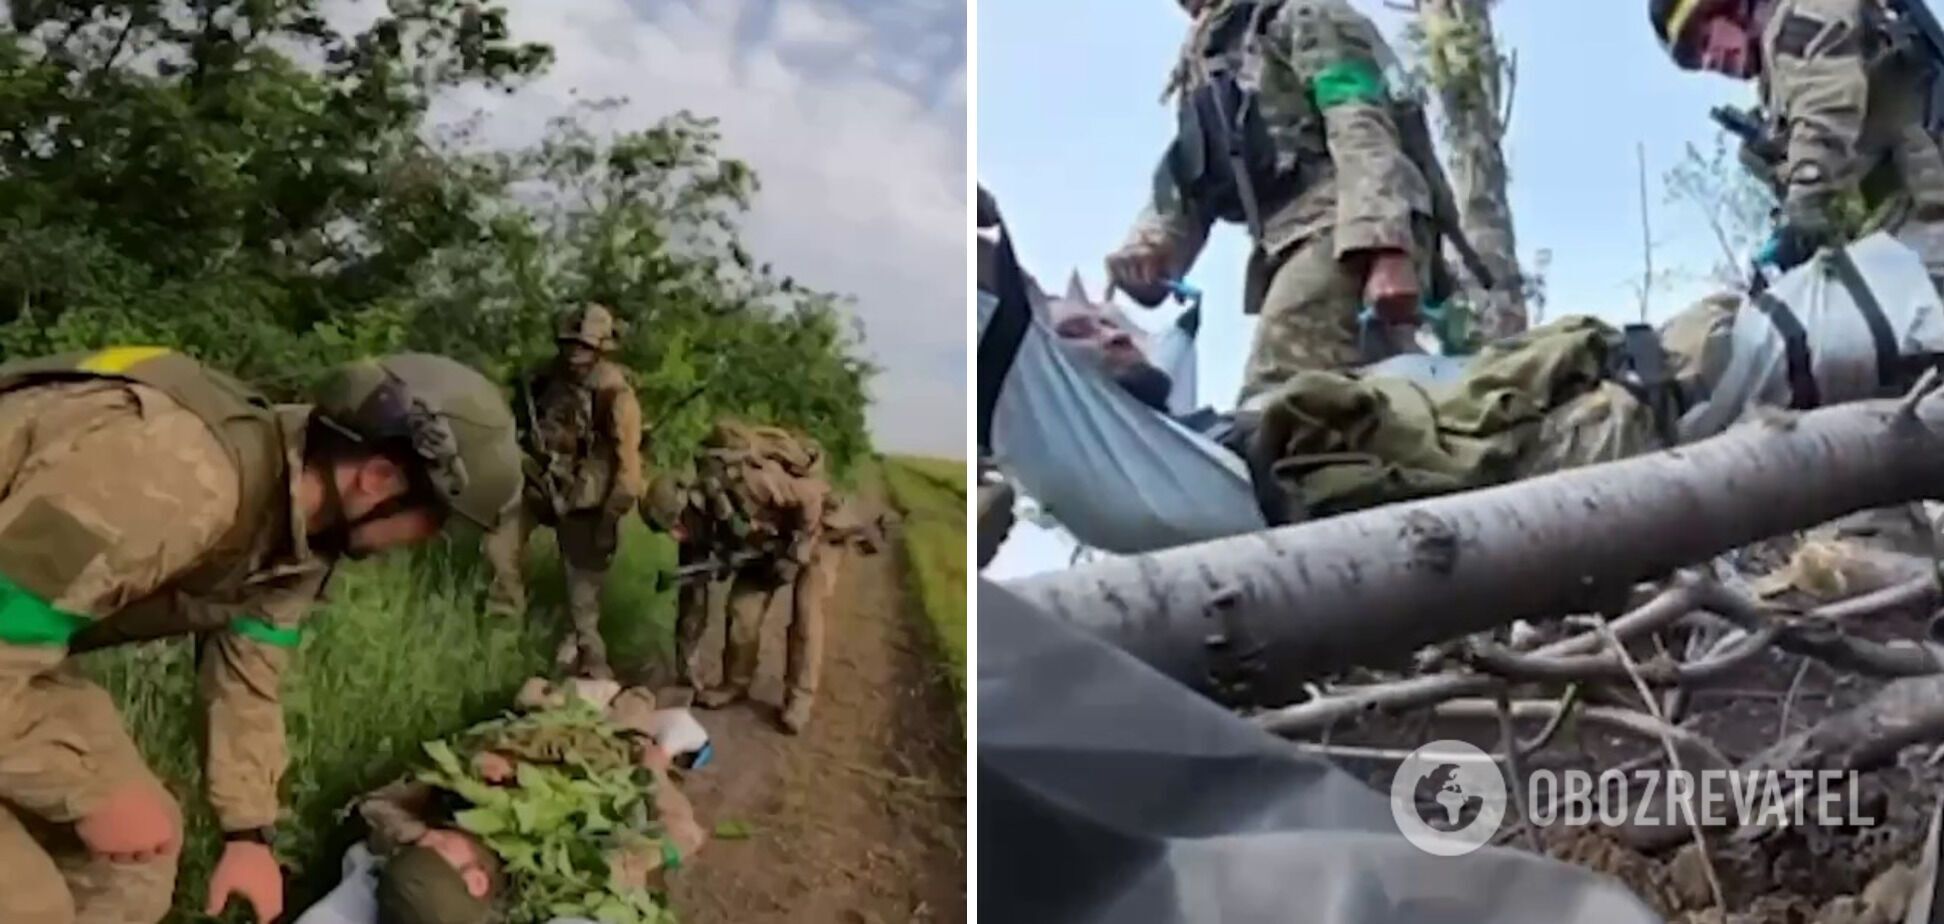 Воїни ССО України врятували поранених під час бою з ворогом побратимів. Відео операції